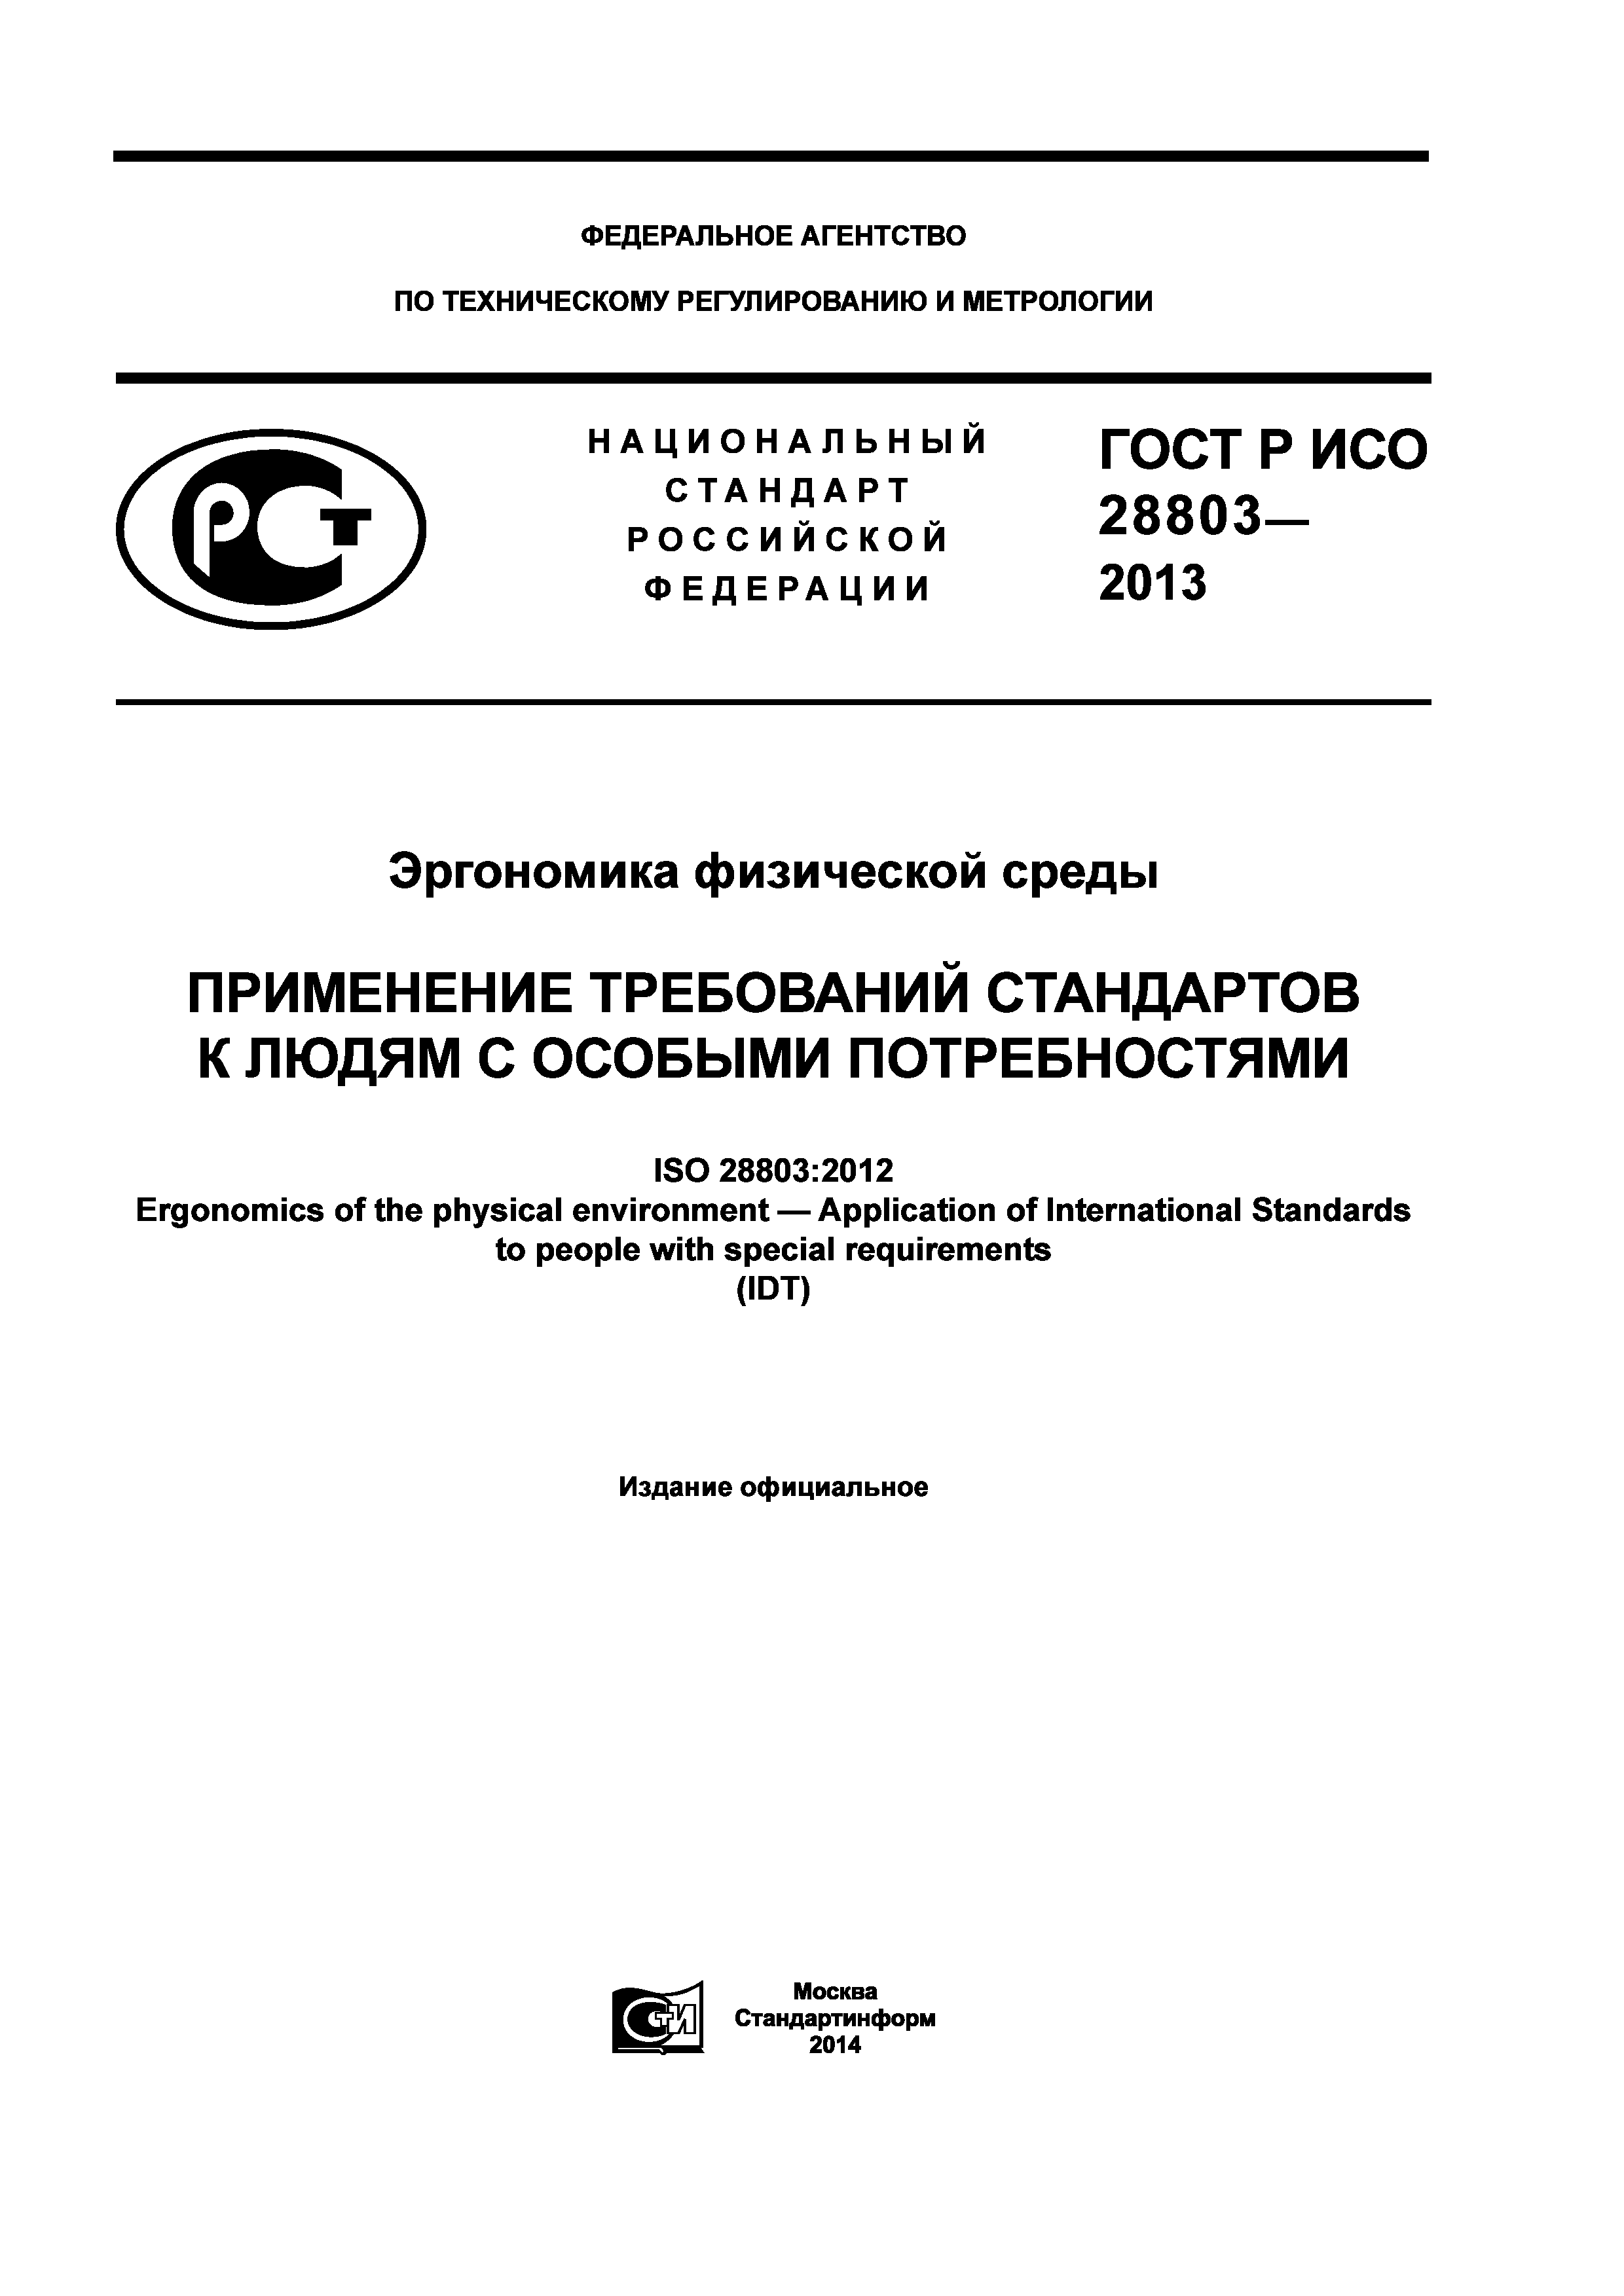 ГОСТ Р ИСО 28803-2013